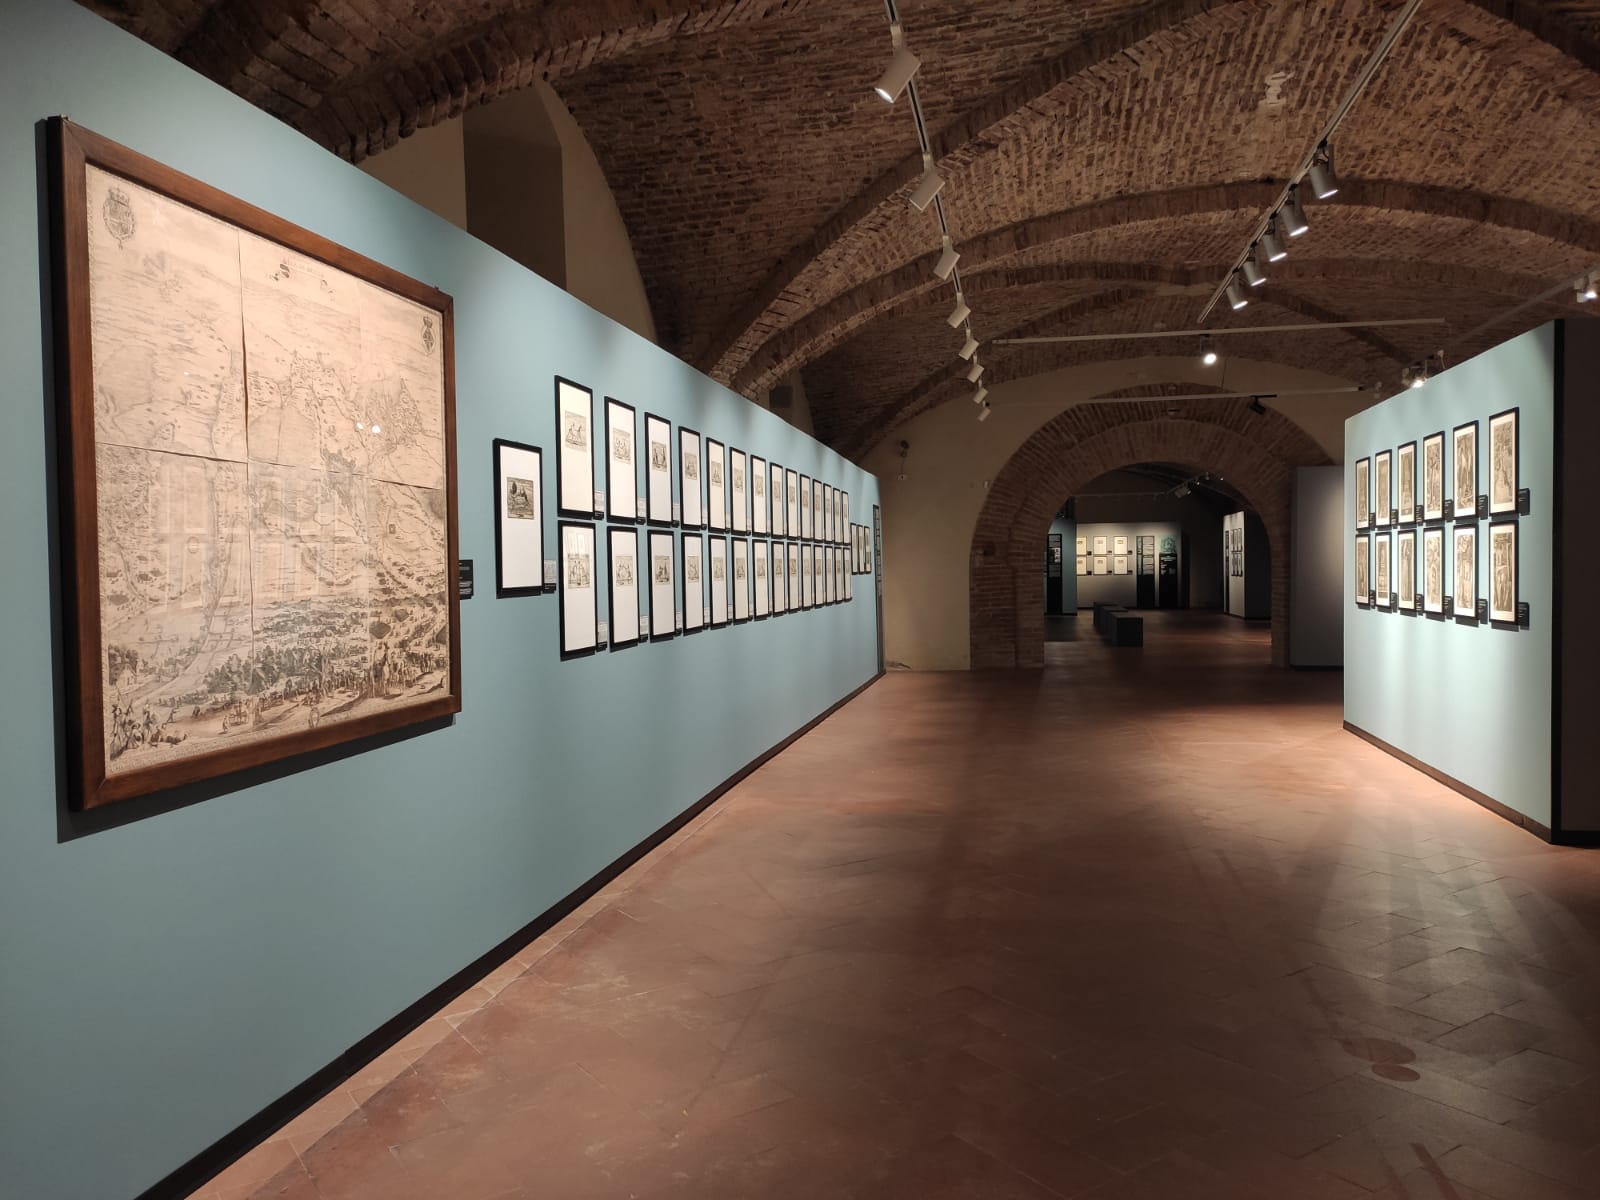 Presentata la mostra “Raffaello Schiaminossi incisore” al Museo Civico di Sansepolcro 